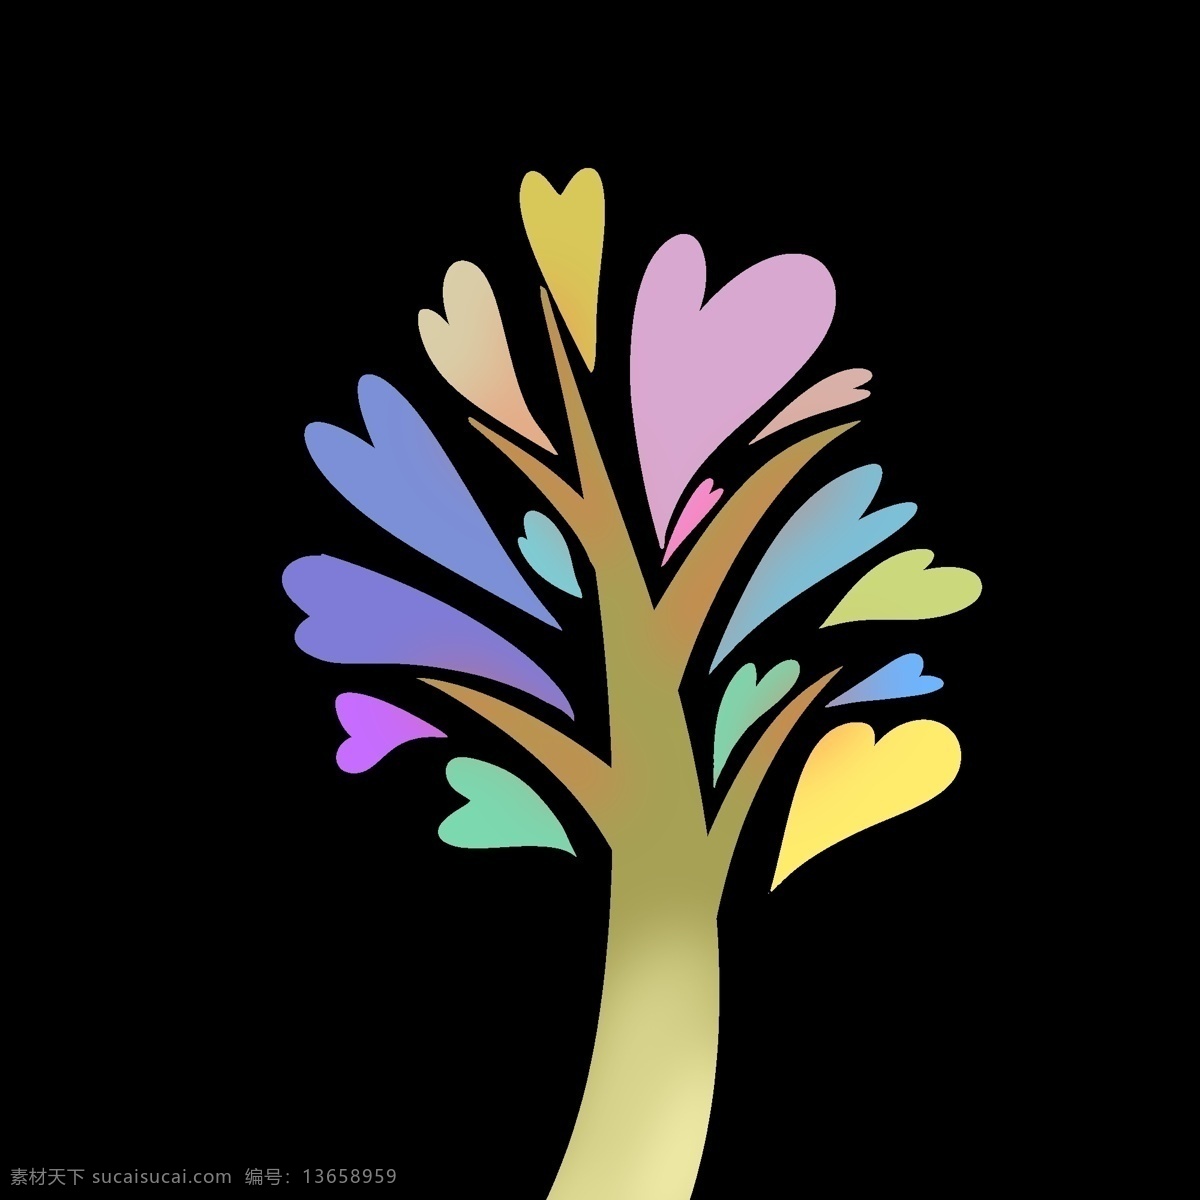 创意 心形 树木 插画 蓝色的心形 创意树木 卡通插画 树木插画 创意插画 树枝 树叶 黄色的心形